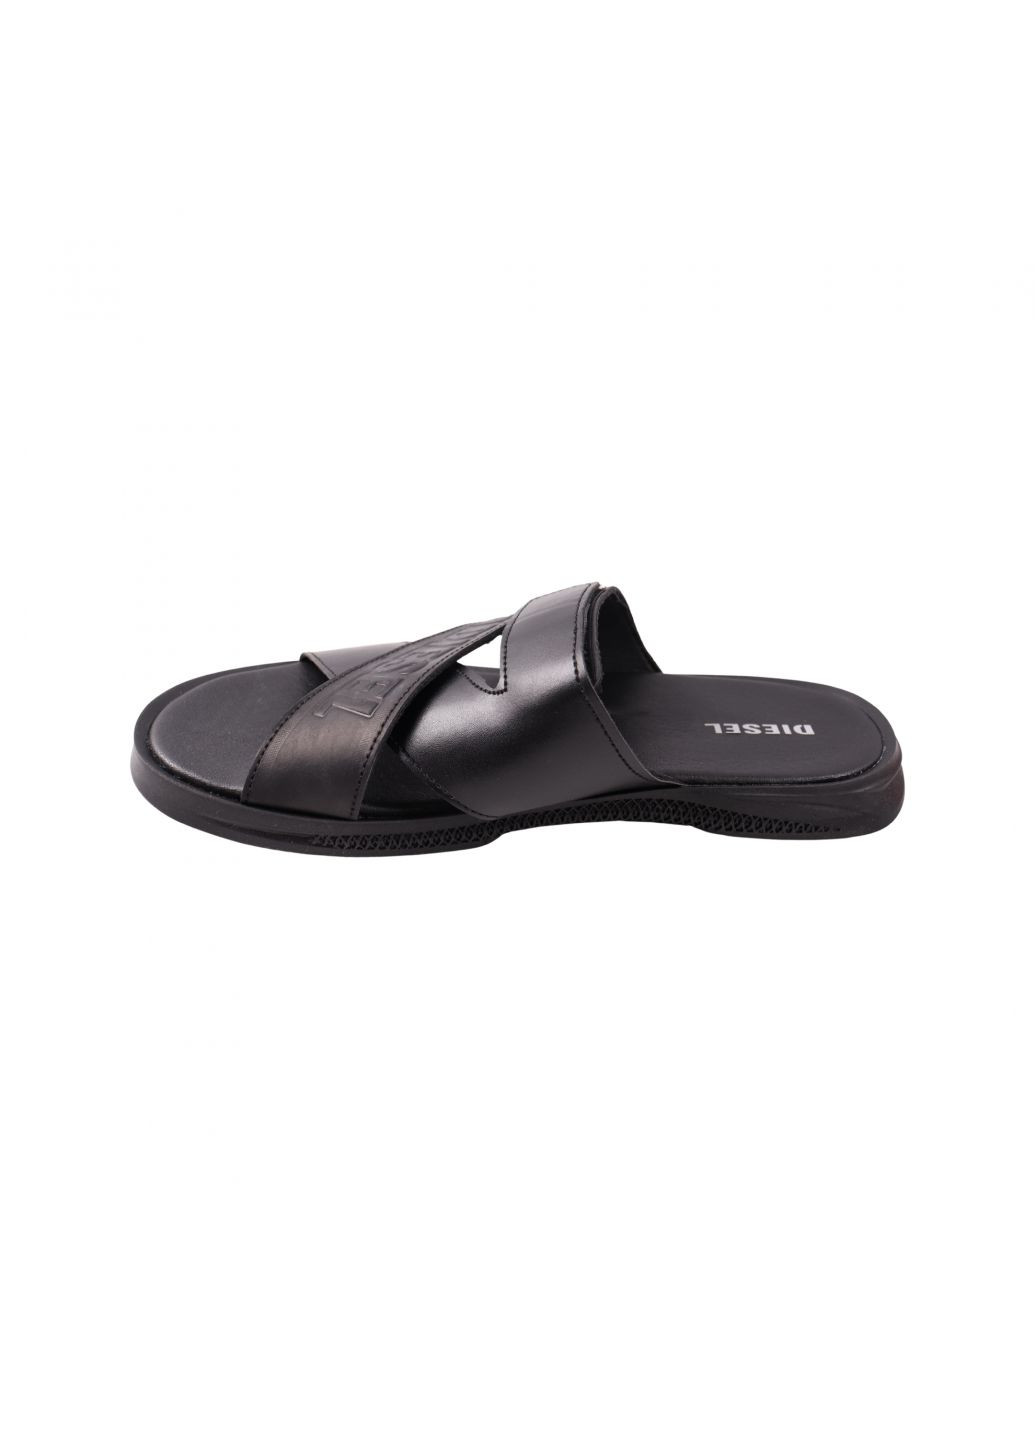 Шльопанці чоловічі чорні натуральна шкіра Maxus Shoes 131-23lshc (259112667)